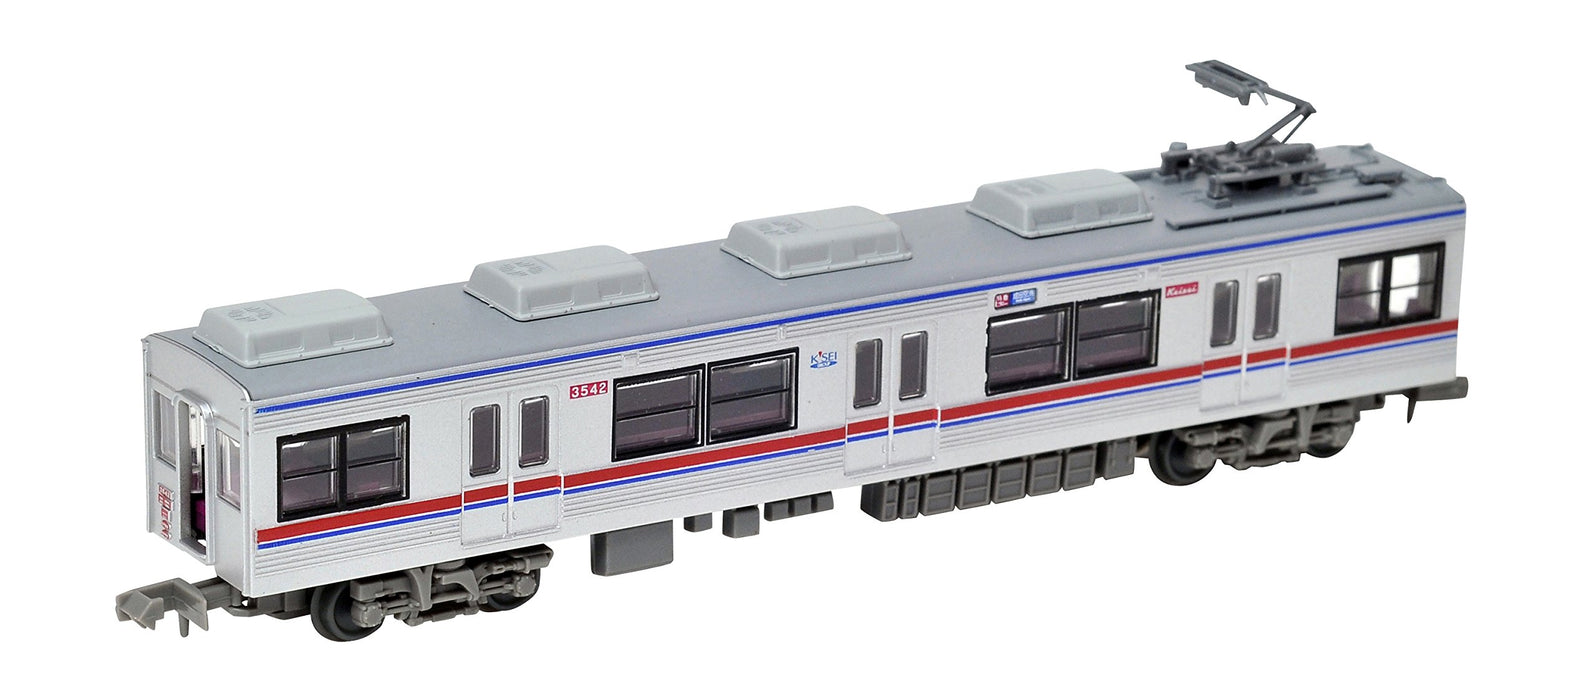 Tomytec Eisenbahnsammlung - Keisei Electric Typ 3500 4-Wagen-Set B, aktualisiertes Modell